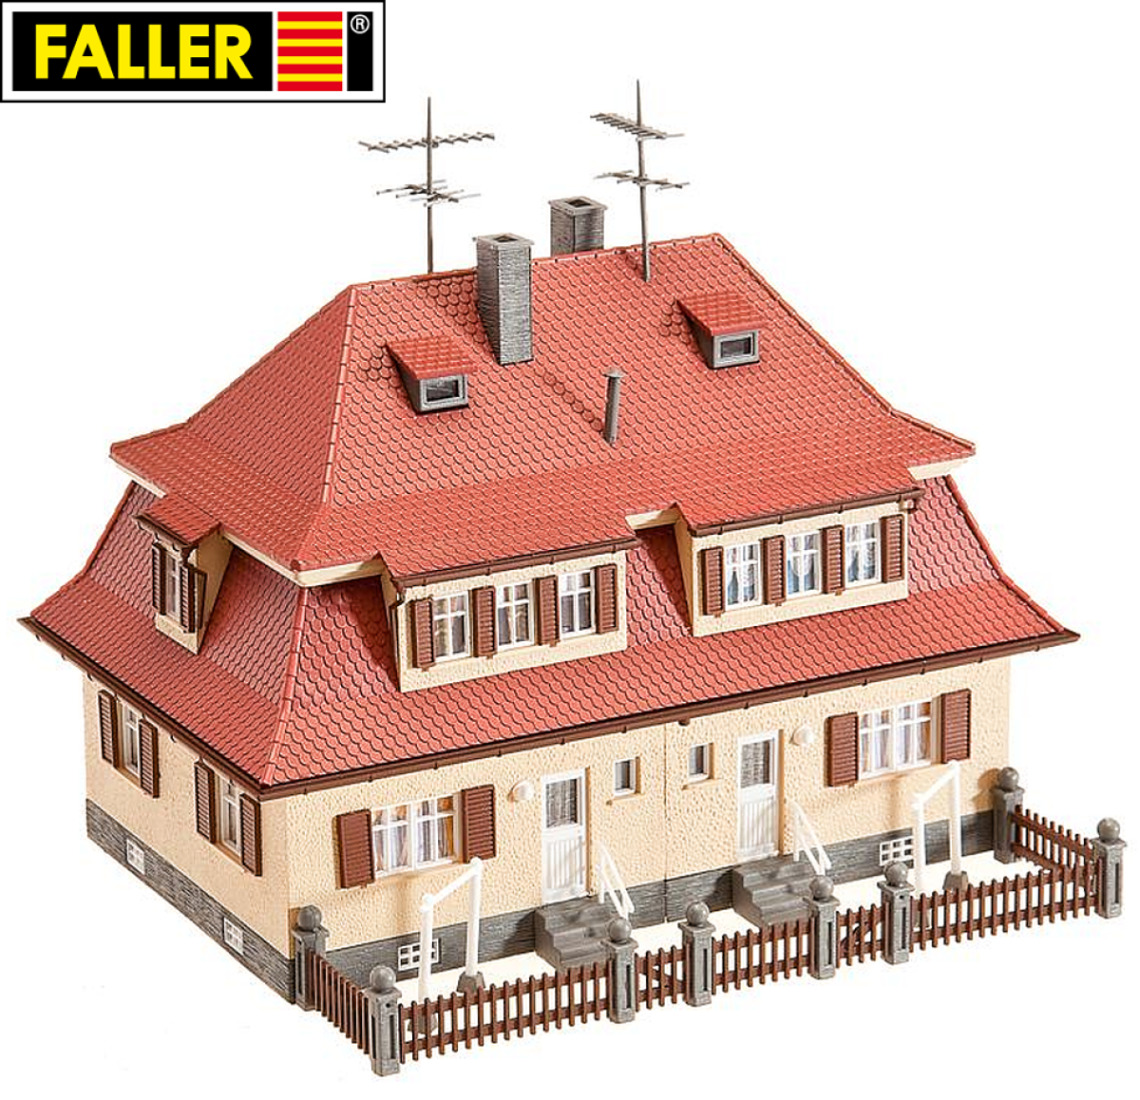 Faller H0 130464 Siedlungs-Doppelhaus 